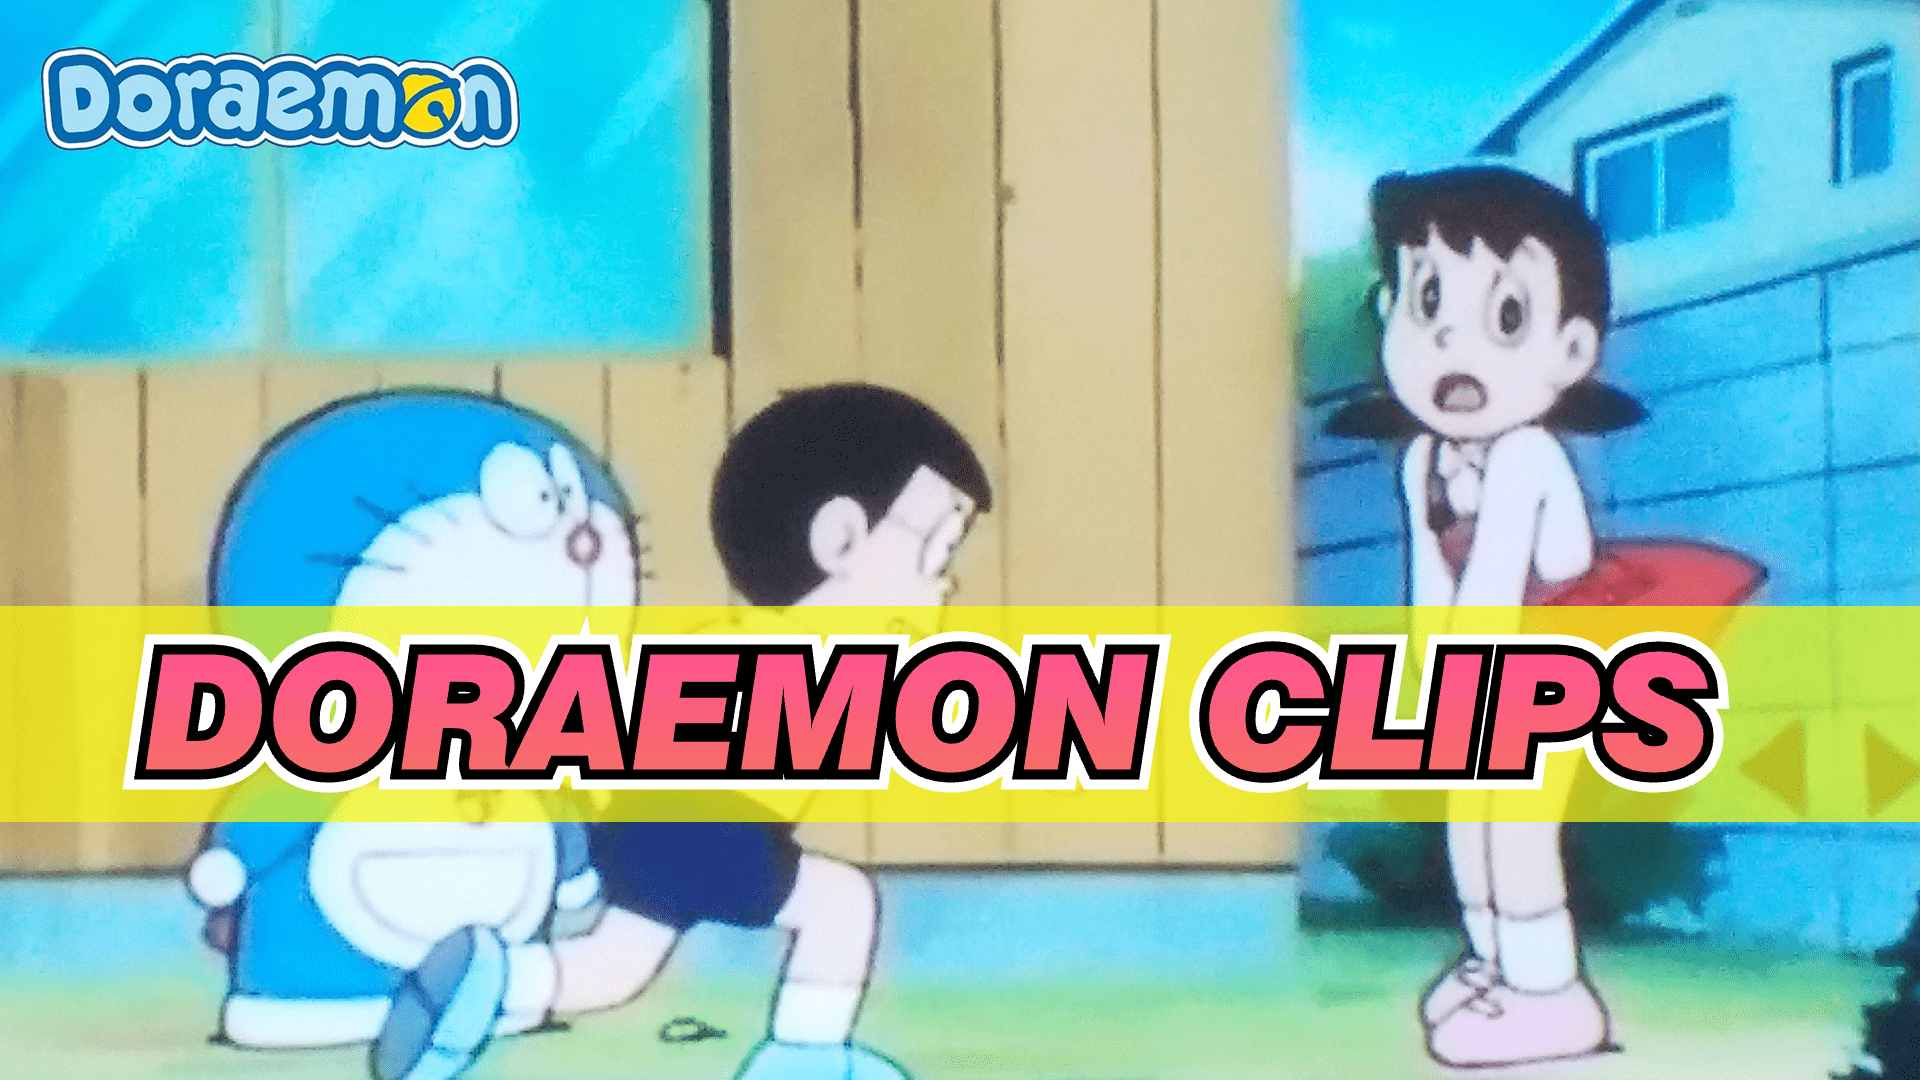 Phần phim điện ảnh thứ 42 của Doraemon trở lại rạp chiếu